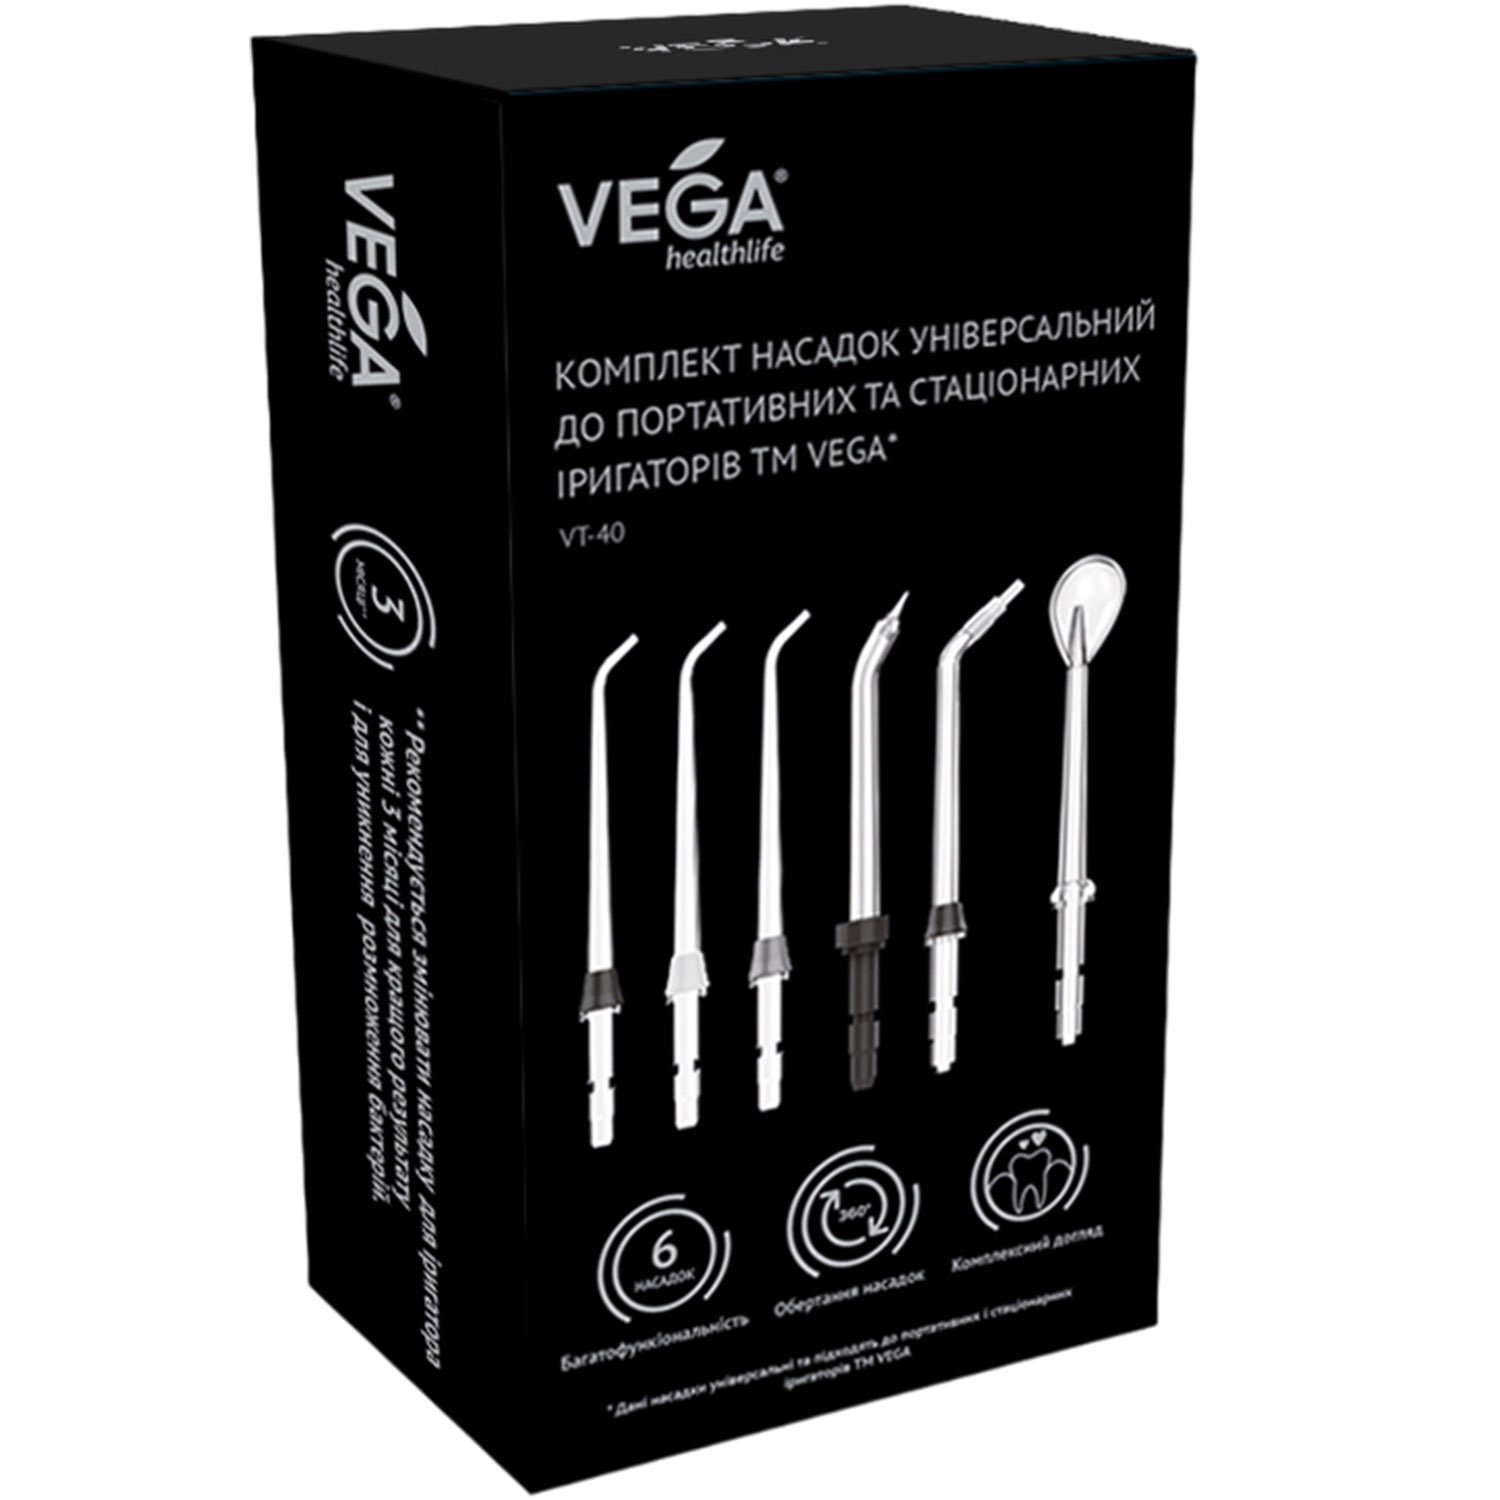 Комплект насадок Vega універсальний до портативних та стаціонарних іригаторів (VT-40) - фото 3